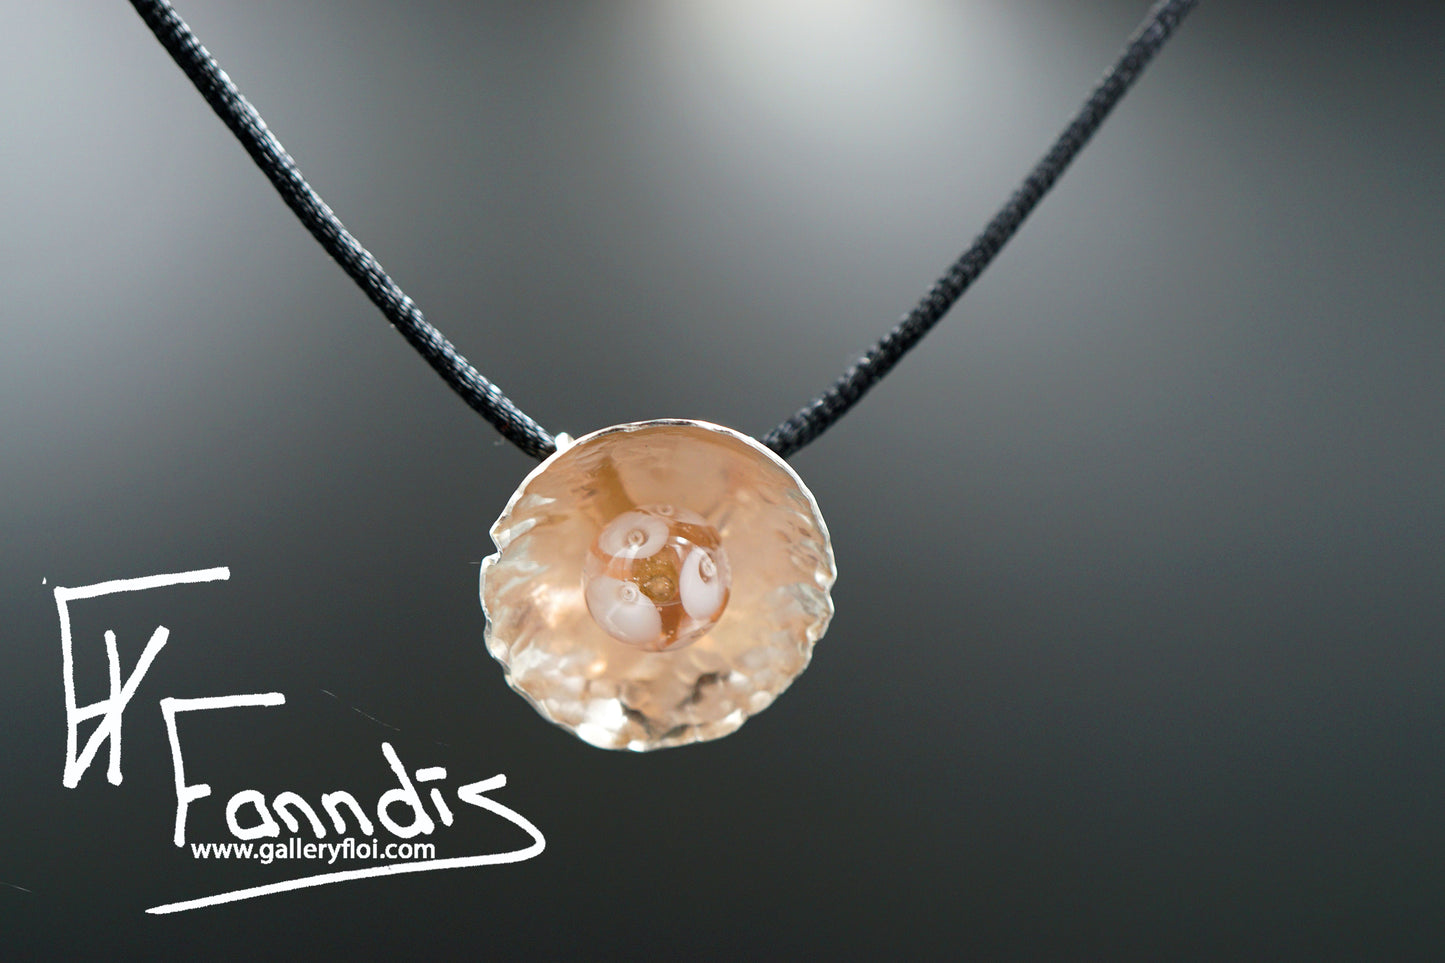 925 Sterling silfur hálsmen með bleikri glerperlu / 925 Sterling silver necklace with a pink glass bead